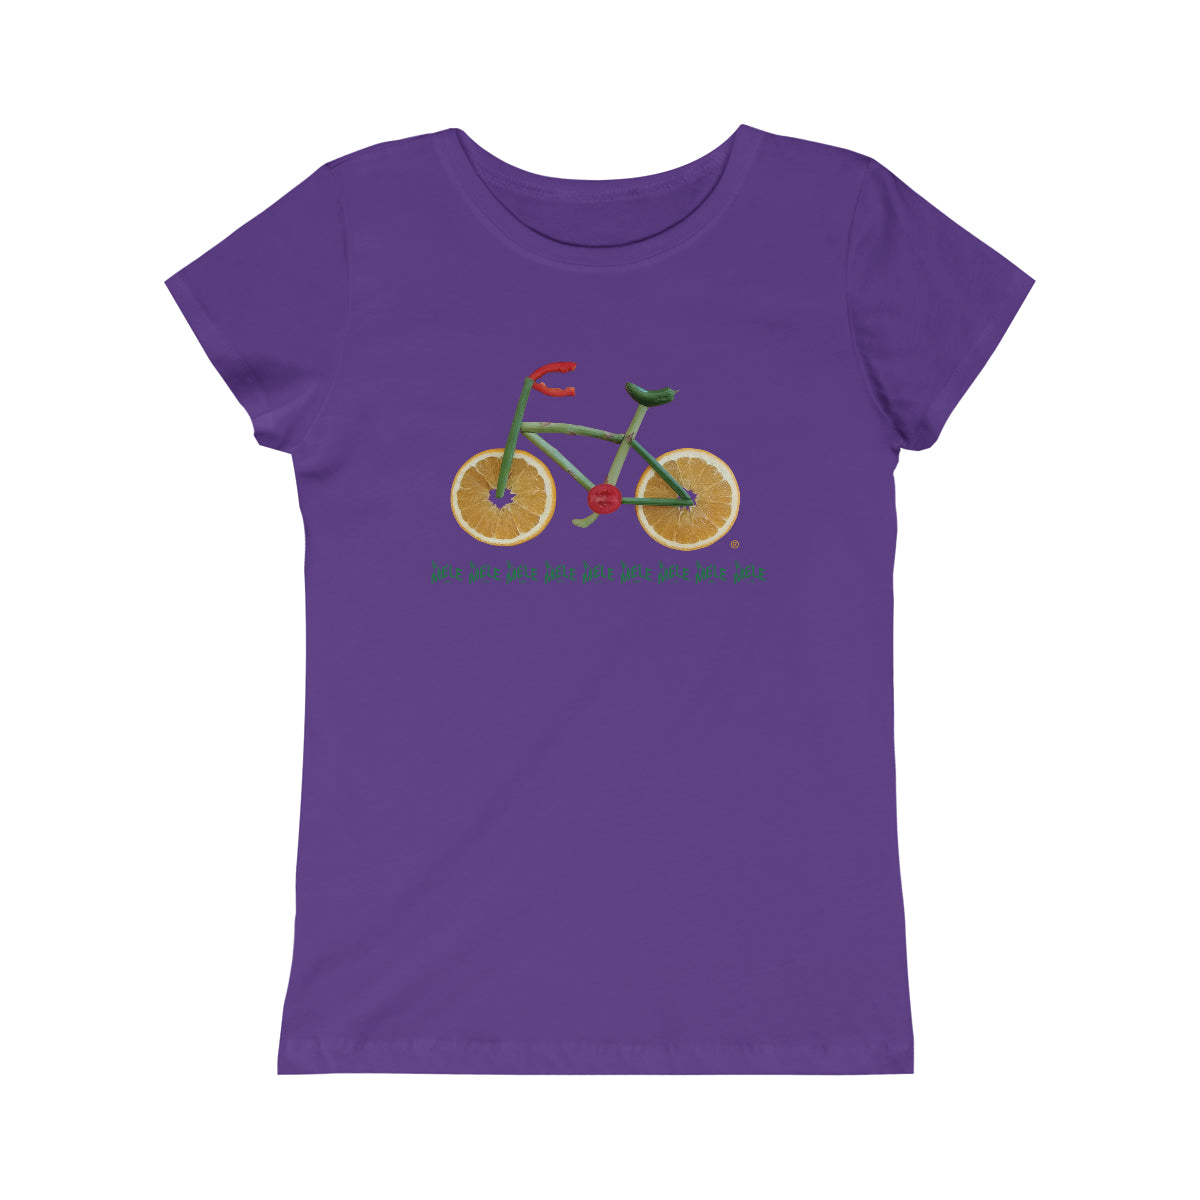 Girls Princess Tee - Veggie Bike